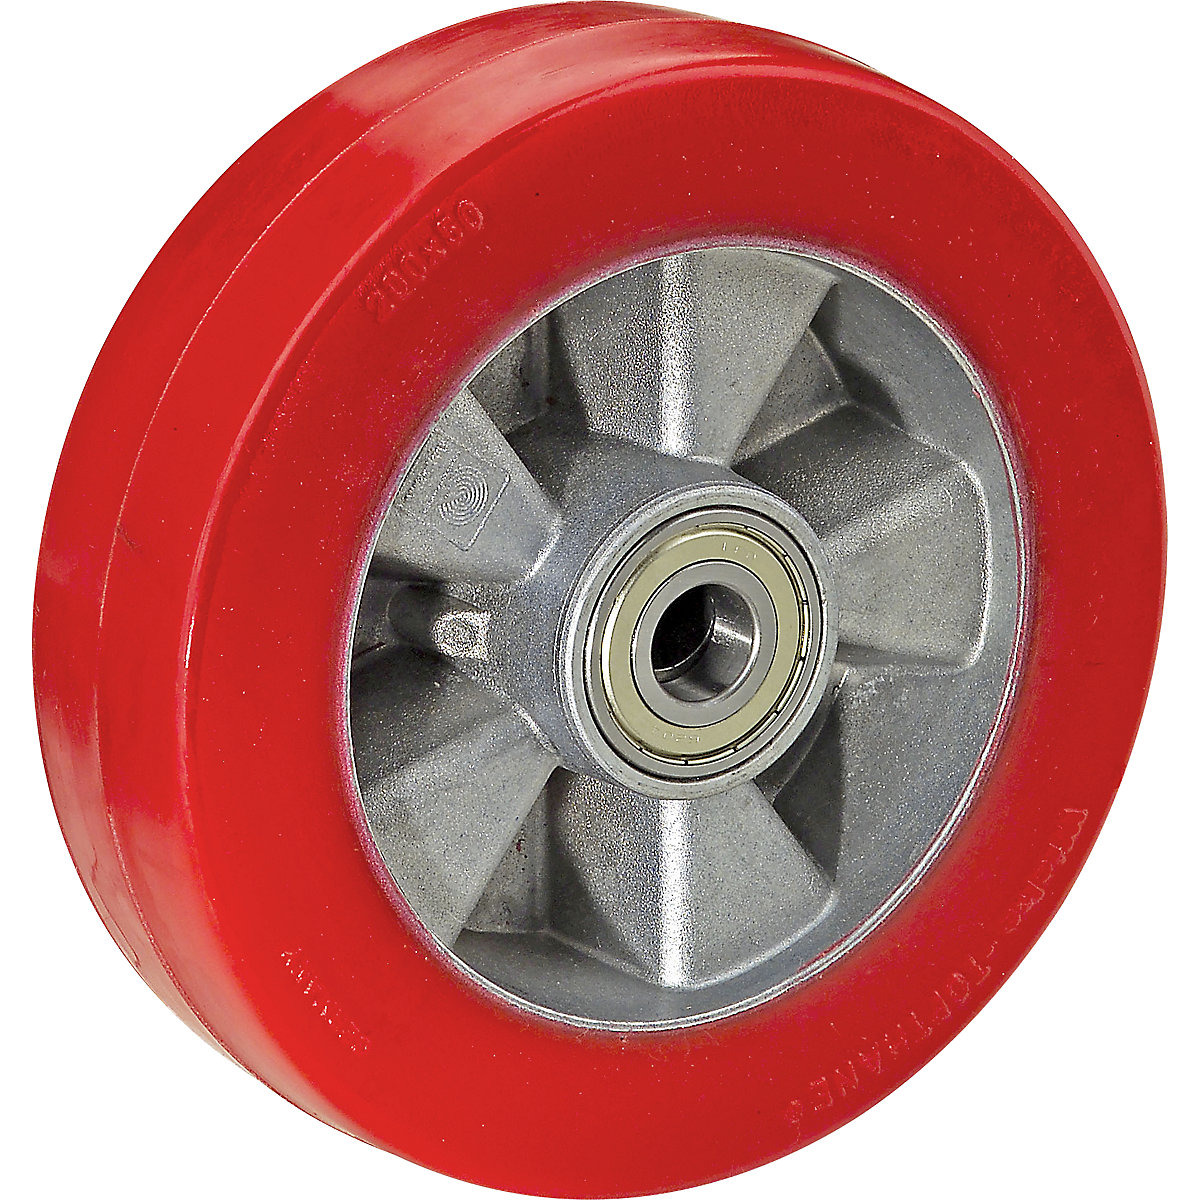 Poliuretanski kotač u crvenoj boji na aluminijskom naplatku - Wicke